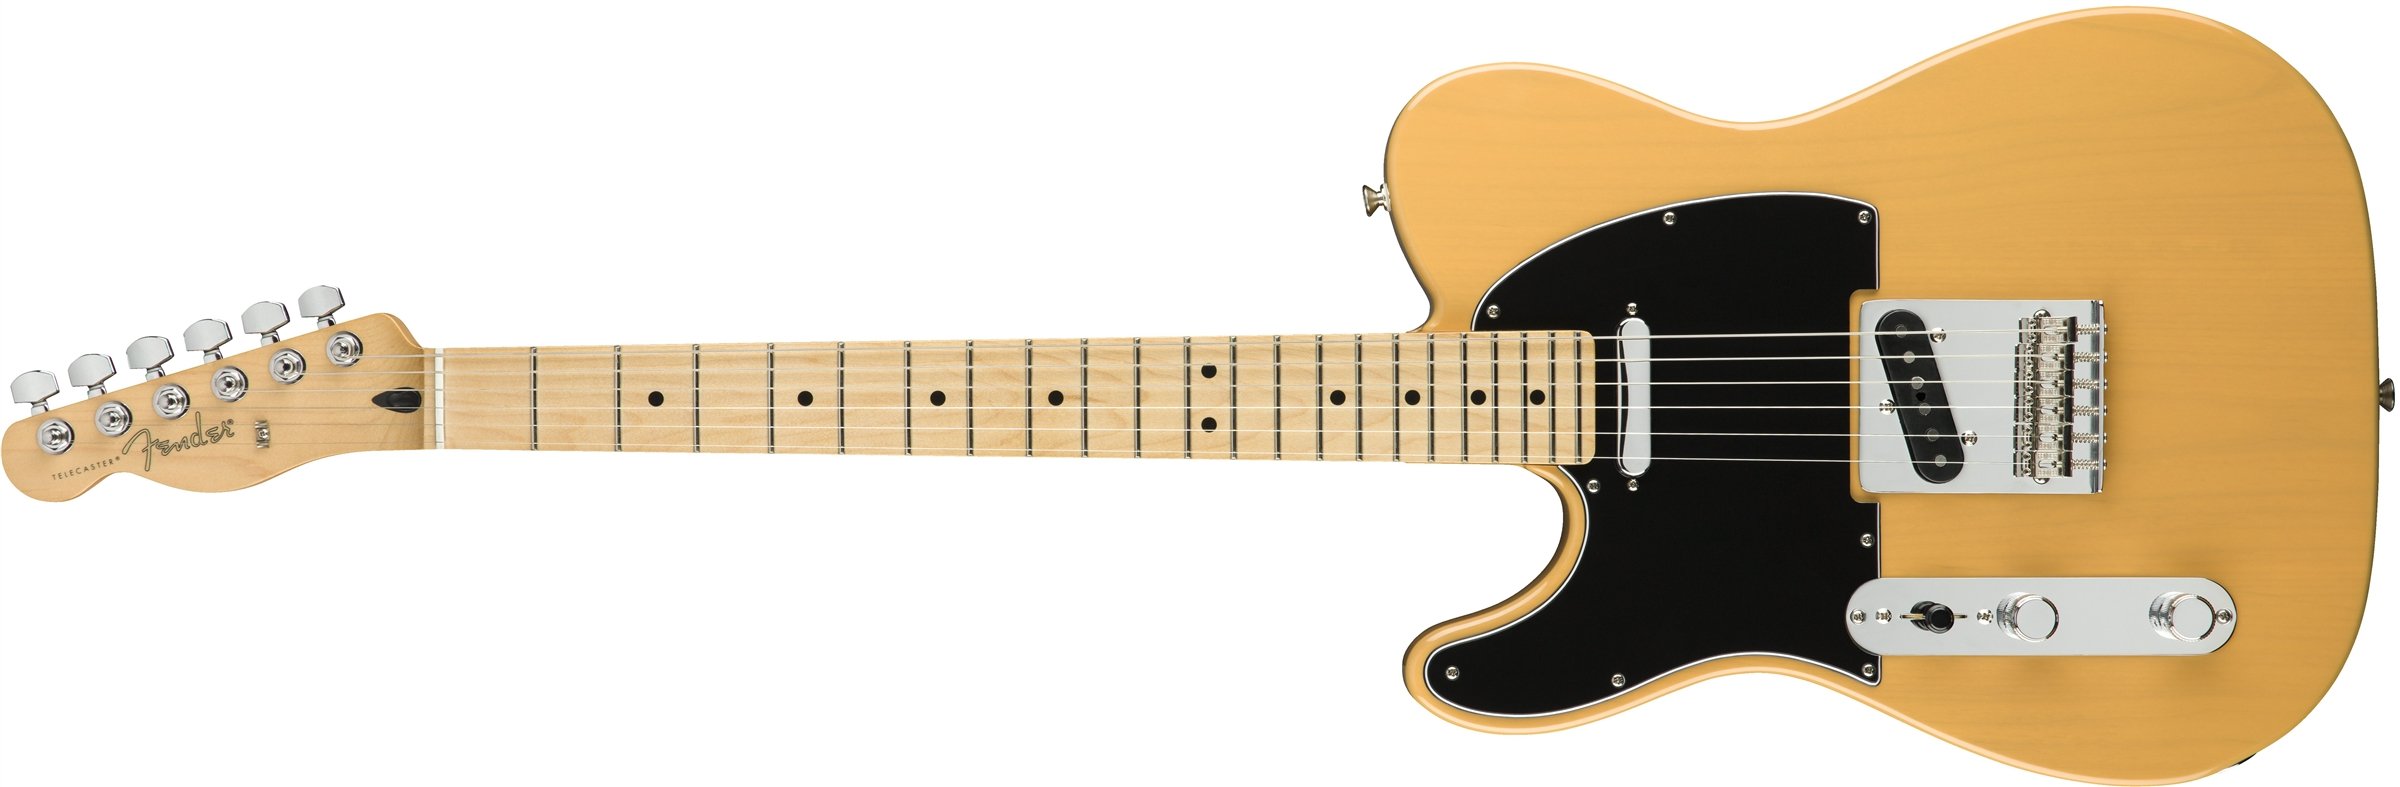 Fender प्लेयर टेलीकास्टर इलेक्ट्रिक गिटार